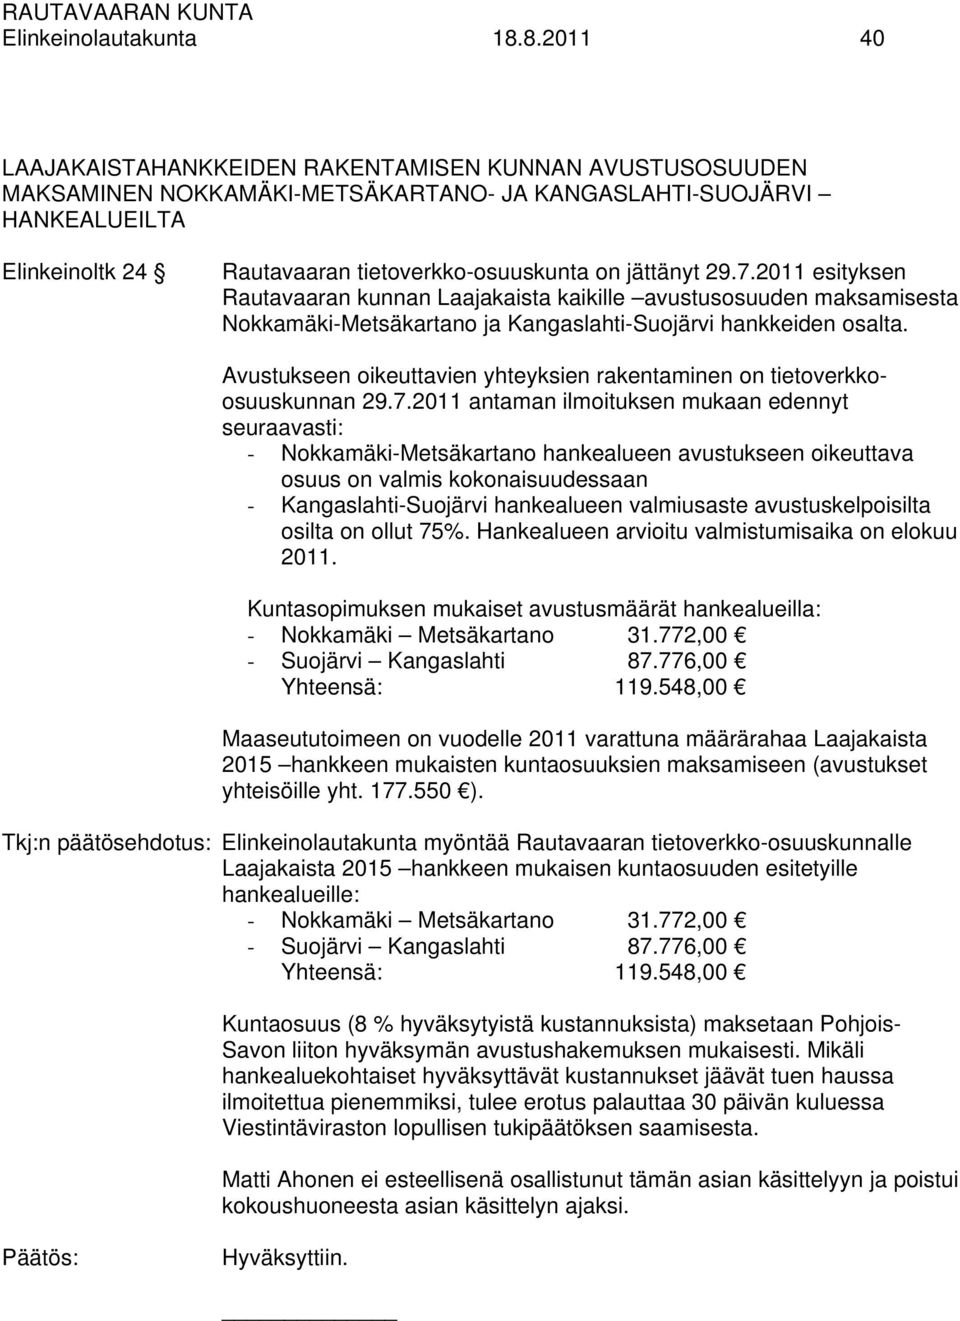 jättänyt 29.7.2011 esityksen Rautavaaran kunnan Laajakaista kaikille avustusosuuden maksamisesta Nokkamäki-Metsäkartano ja Kangaslahti-Suojärvi hankkeiden osalta.